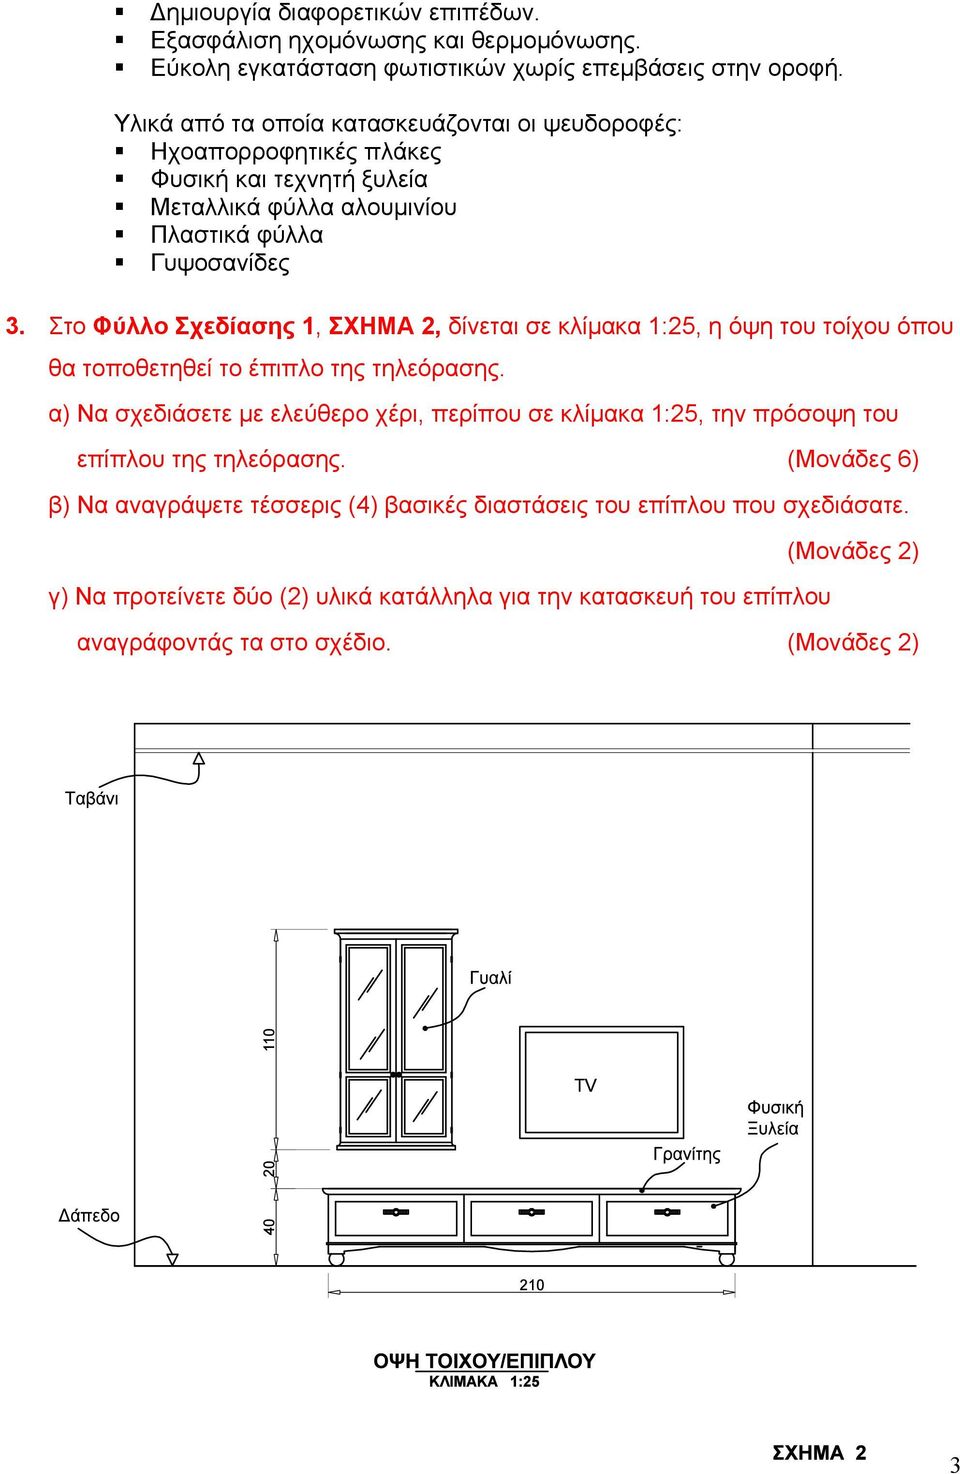 Στο Φύλλο Σχεδίασης 1, ΣΧΗΜΑ 2, δίνεται σε κλίµακα 1:25, η όψη του τοίχου όπου θα τοποθετηθεί το έπιπλο της τηλεόρασης.